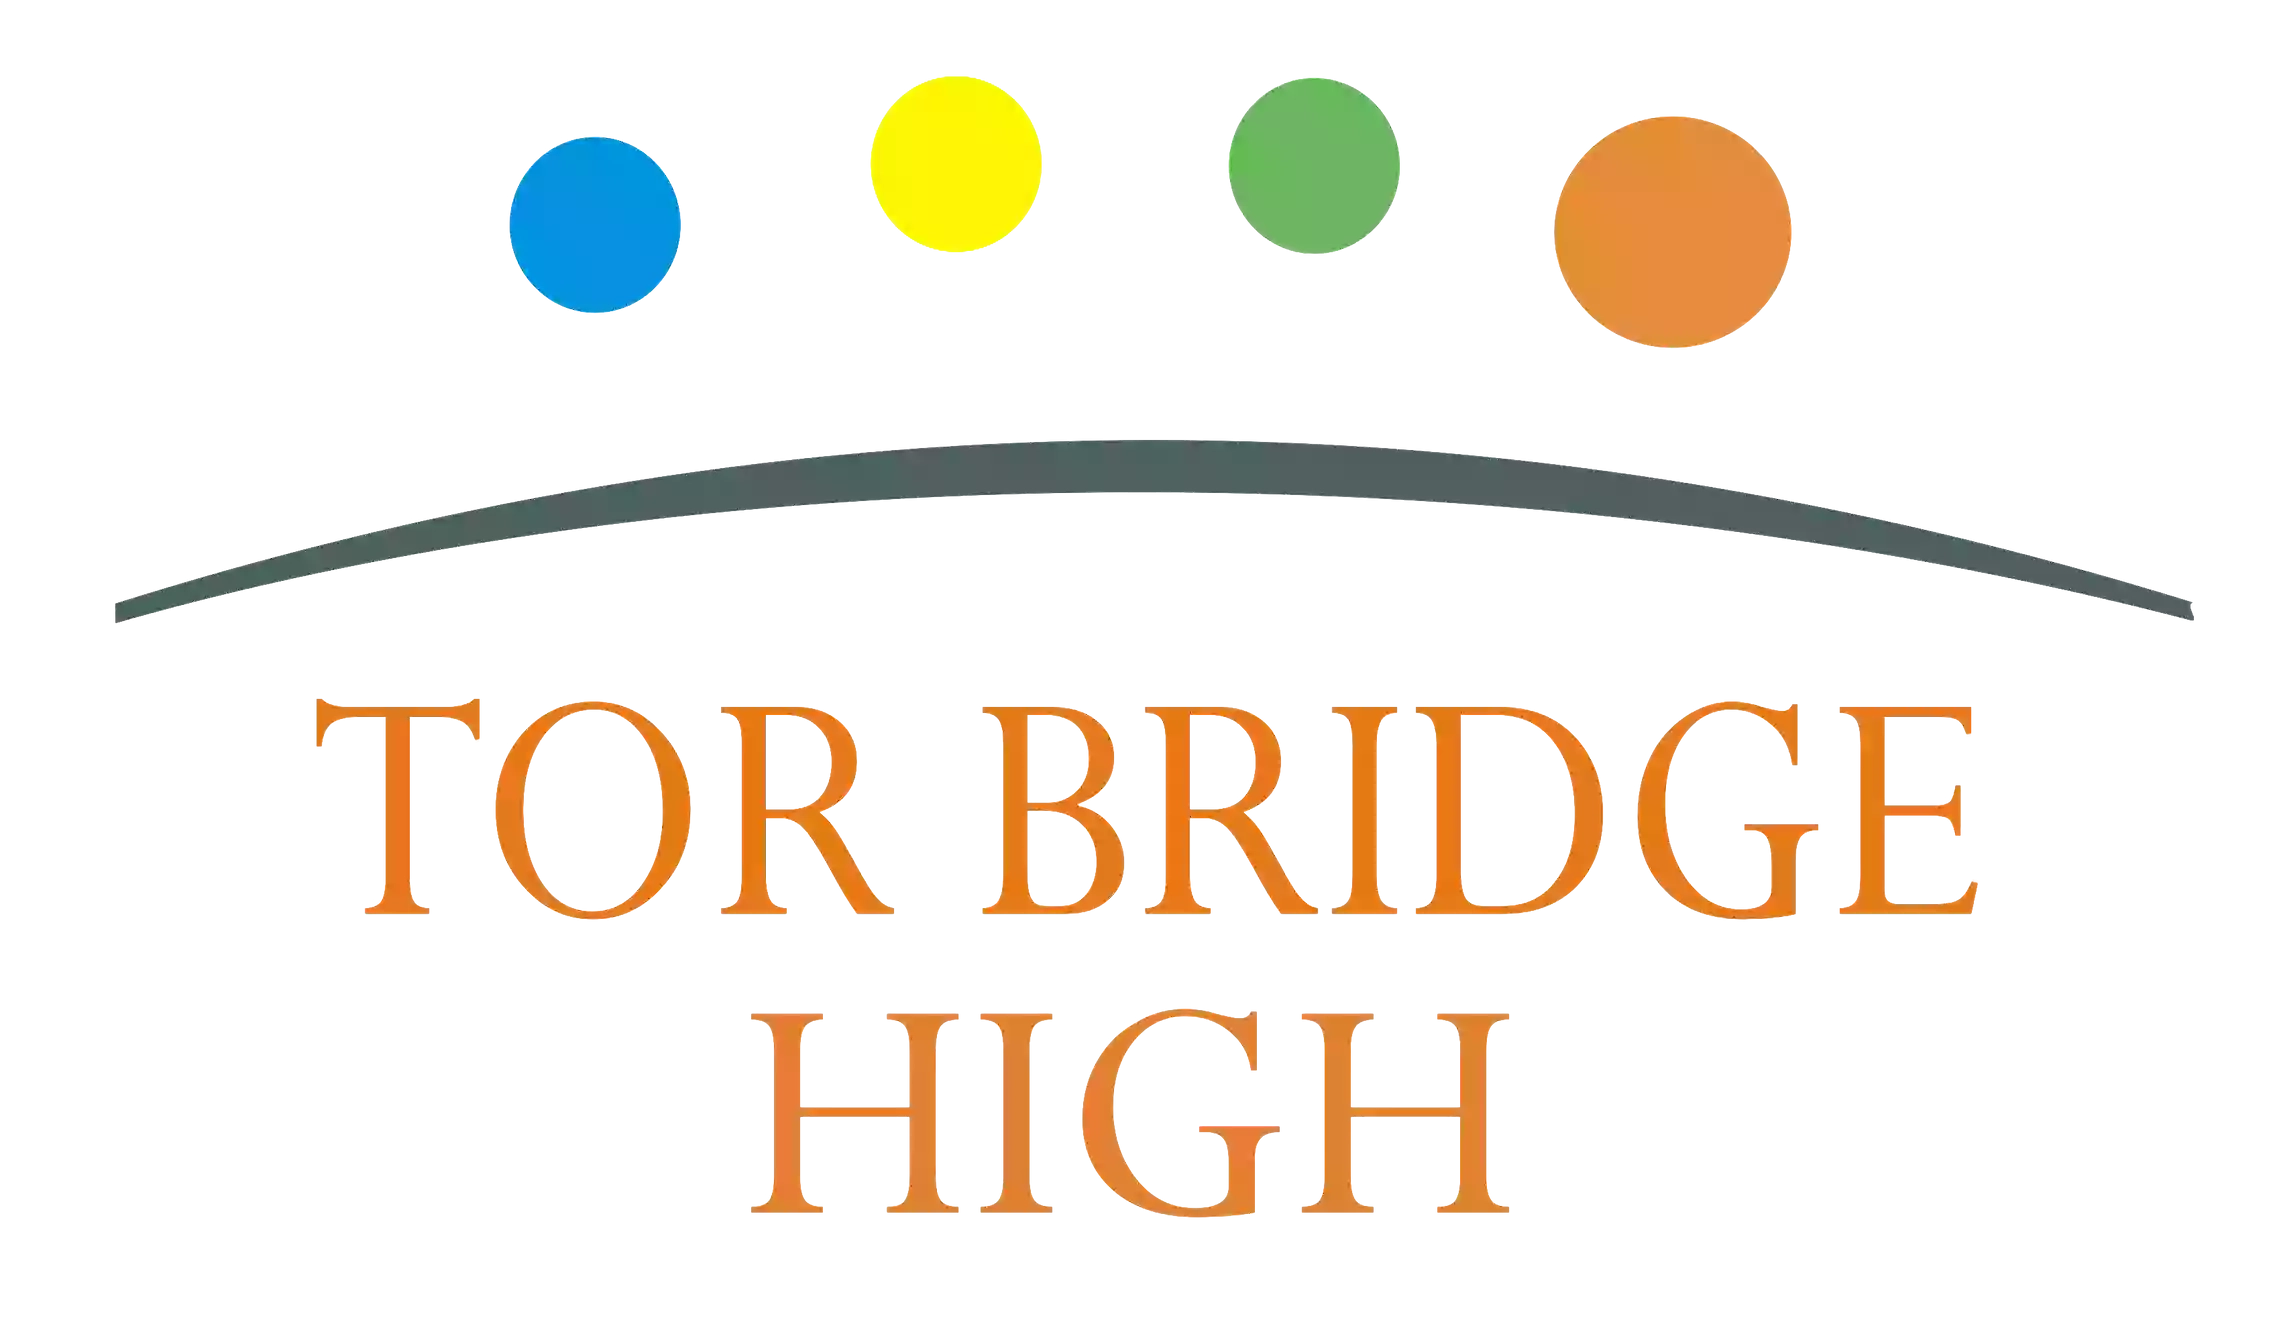 Tor Bridge High